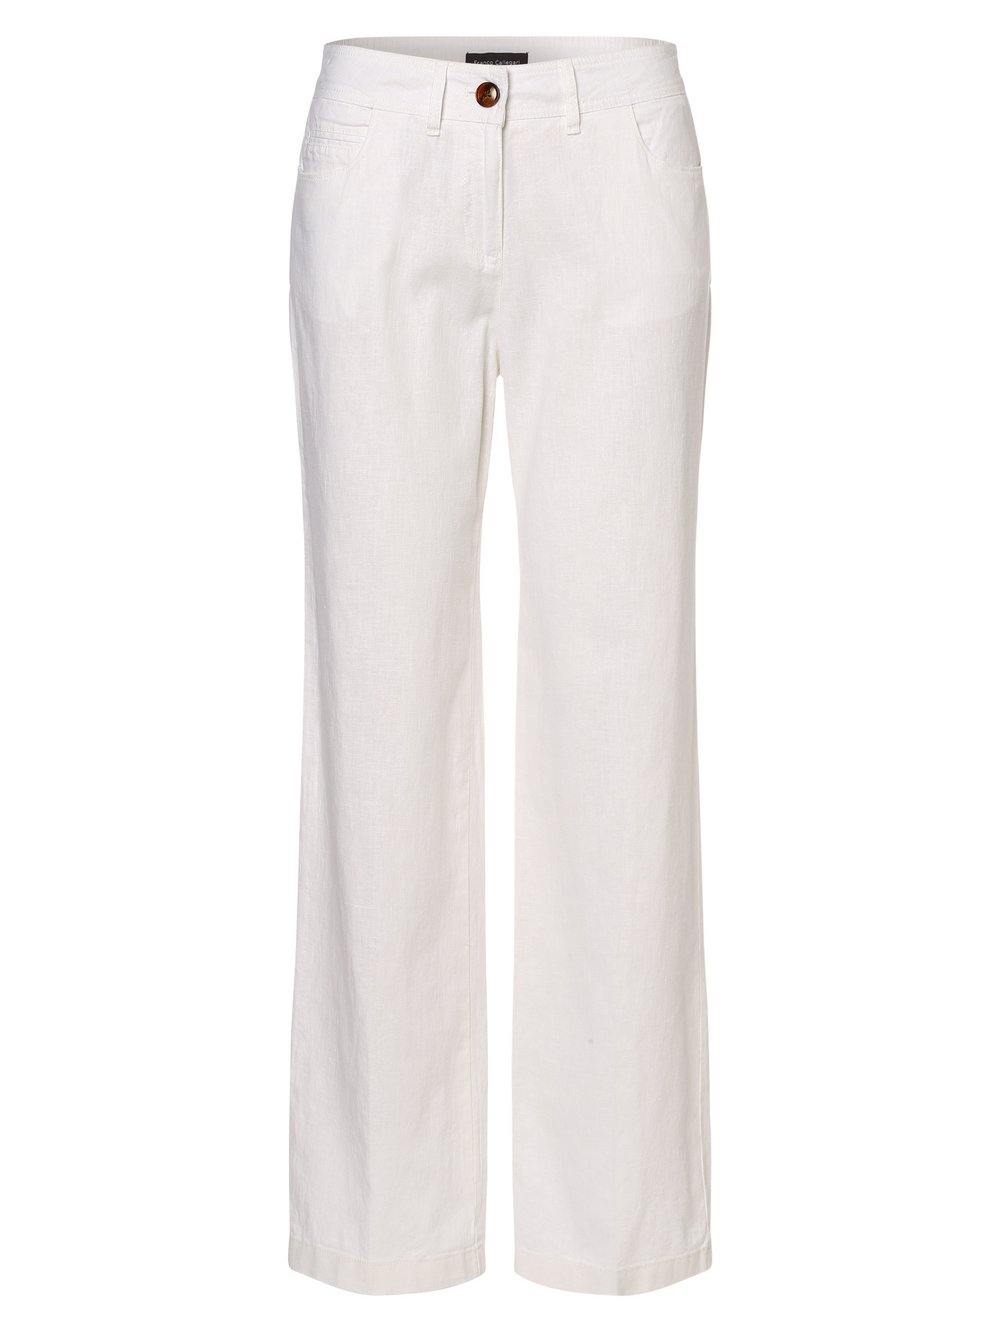 Franco Callegari - Spodnie damskie z dodatkiem lnu, biały